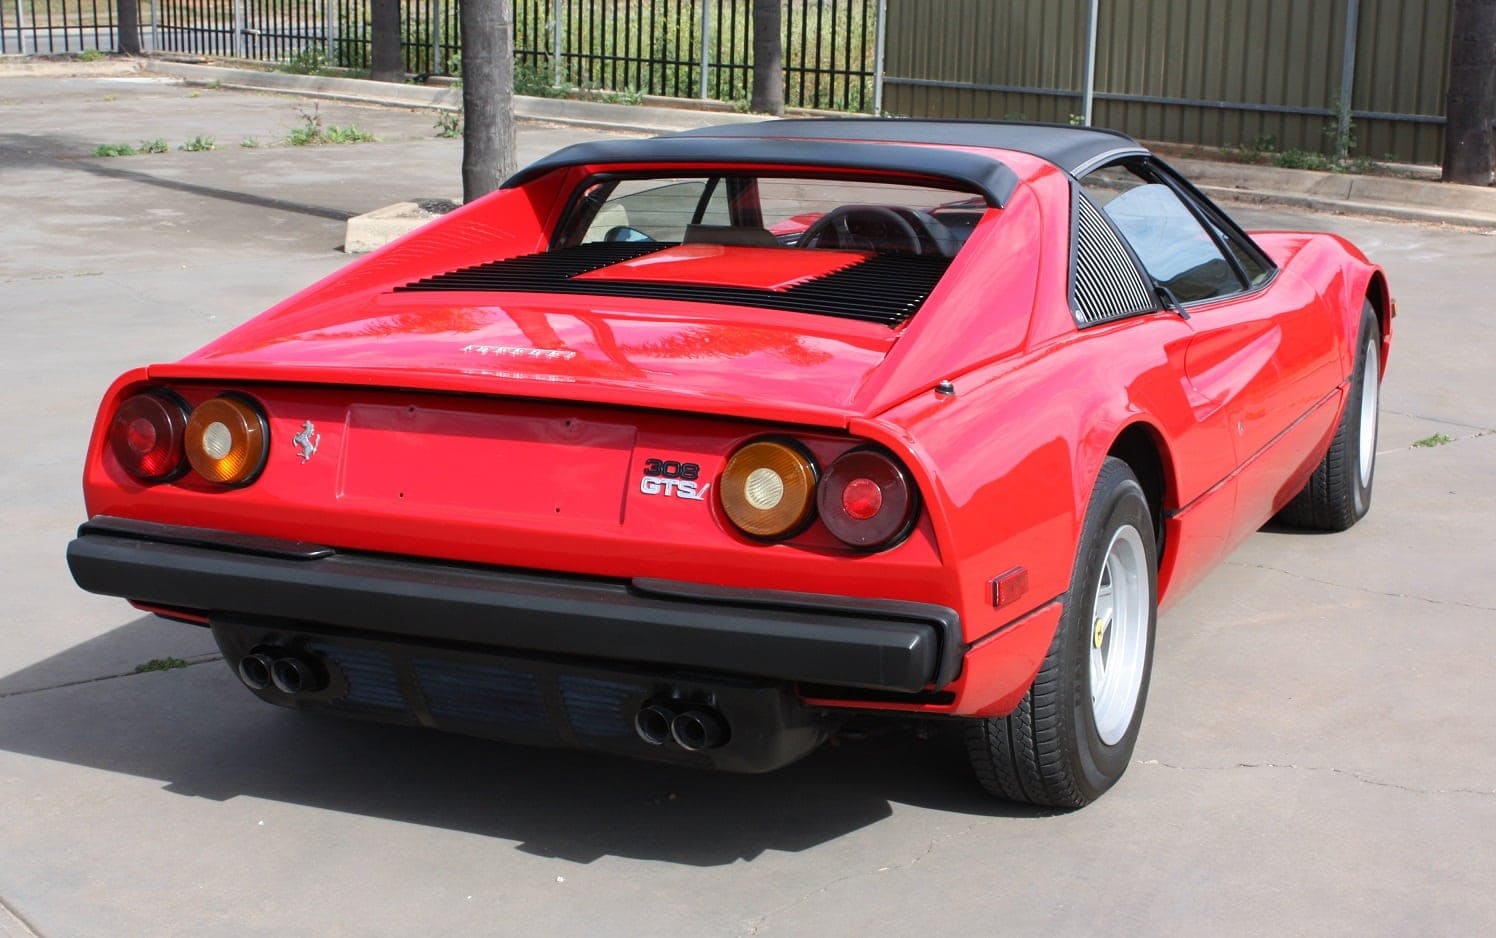 1980 Ferrari 308 GTSi red